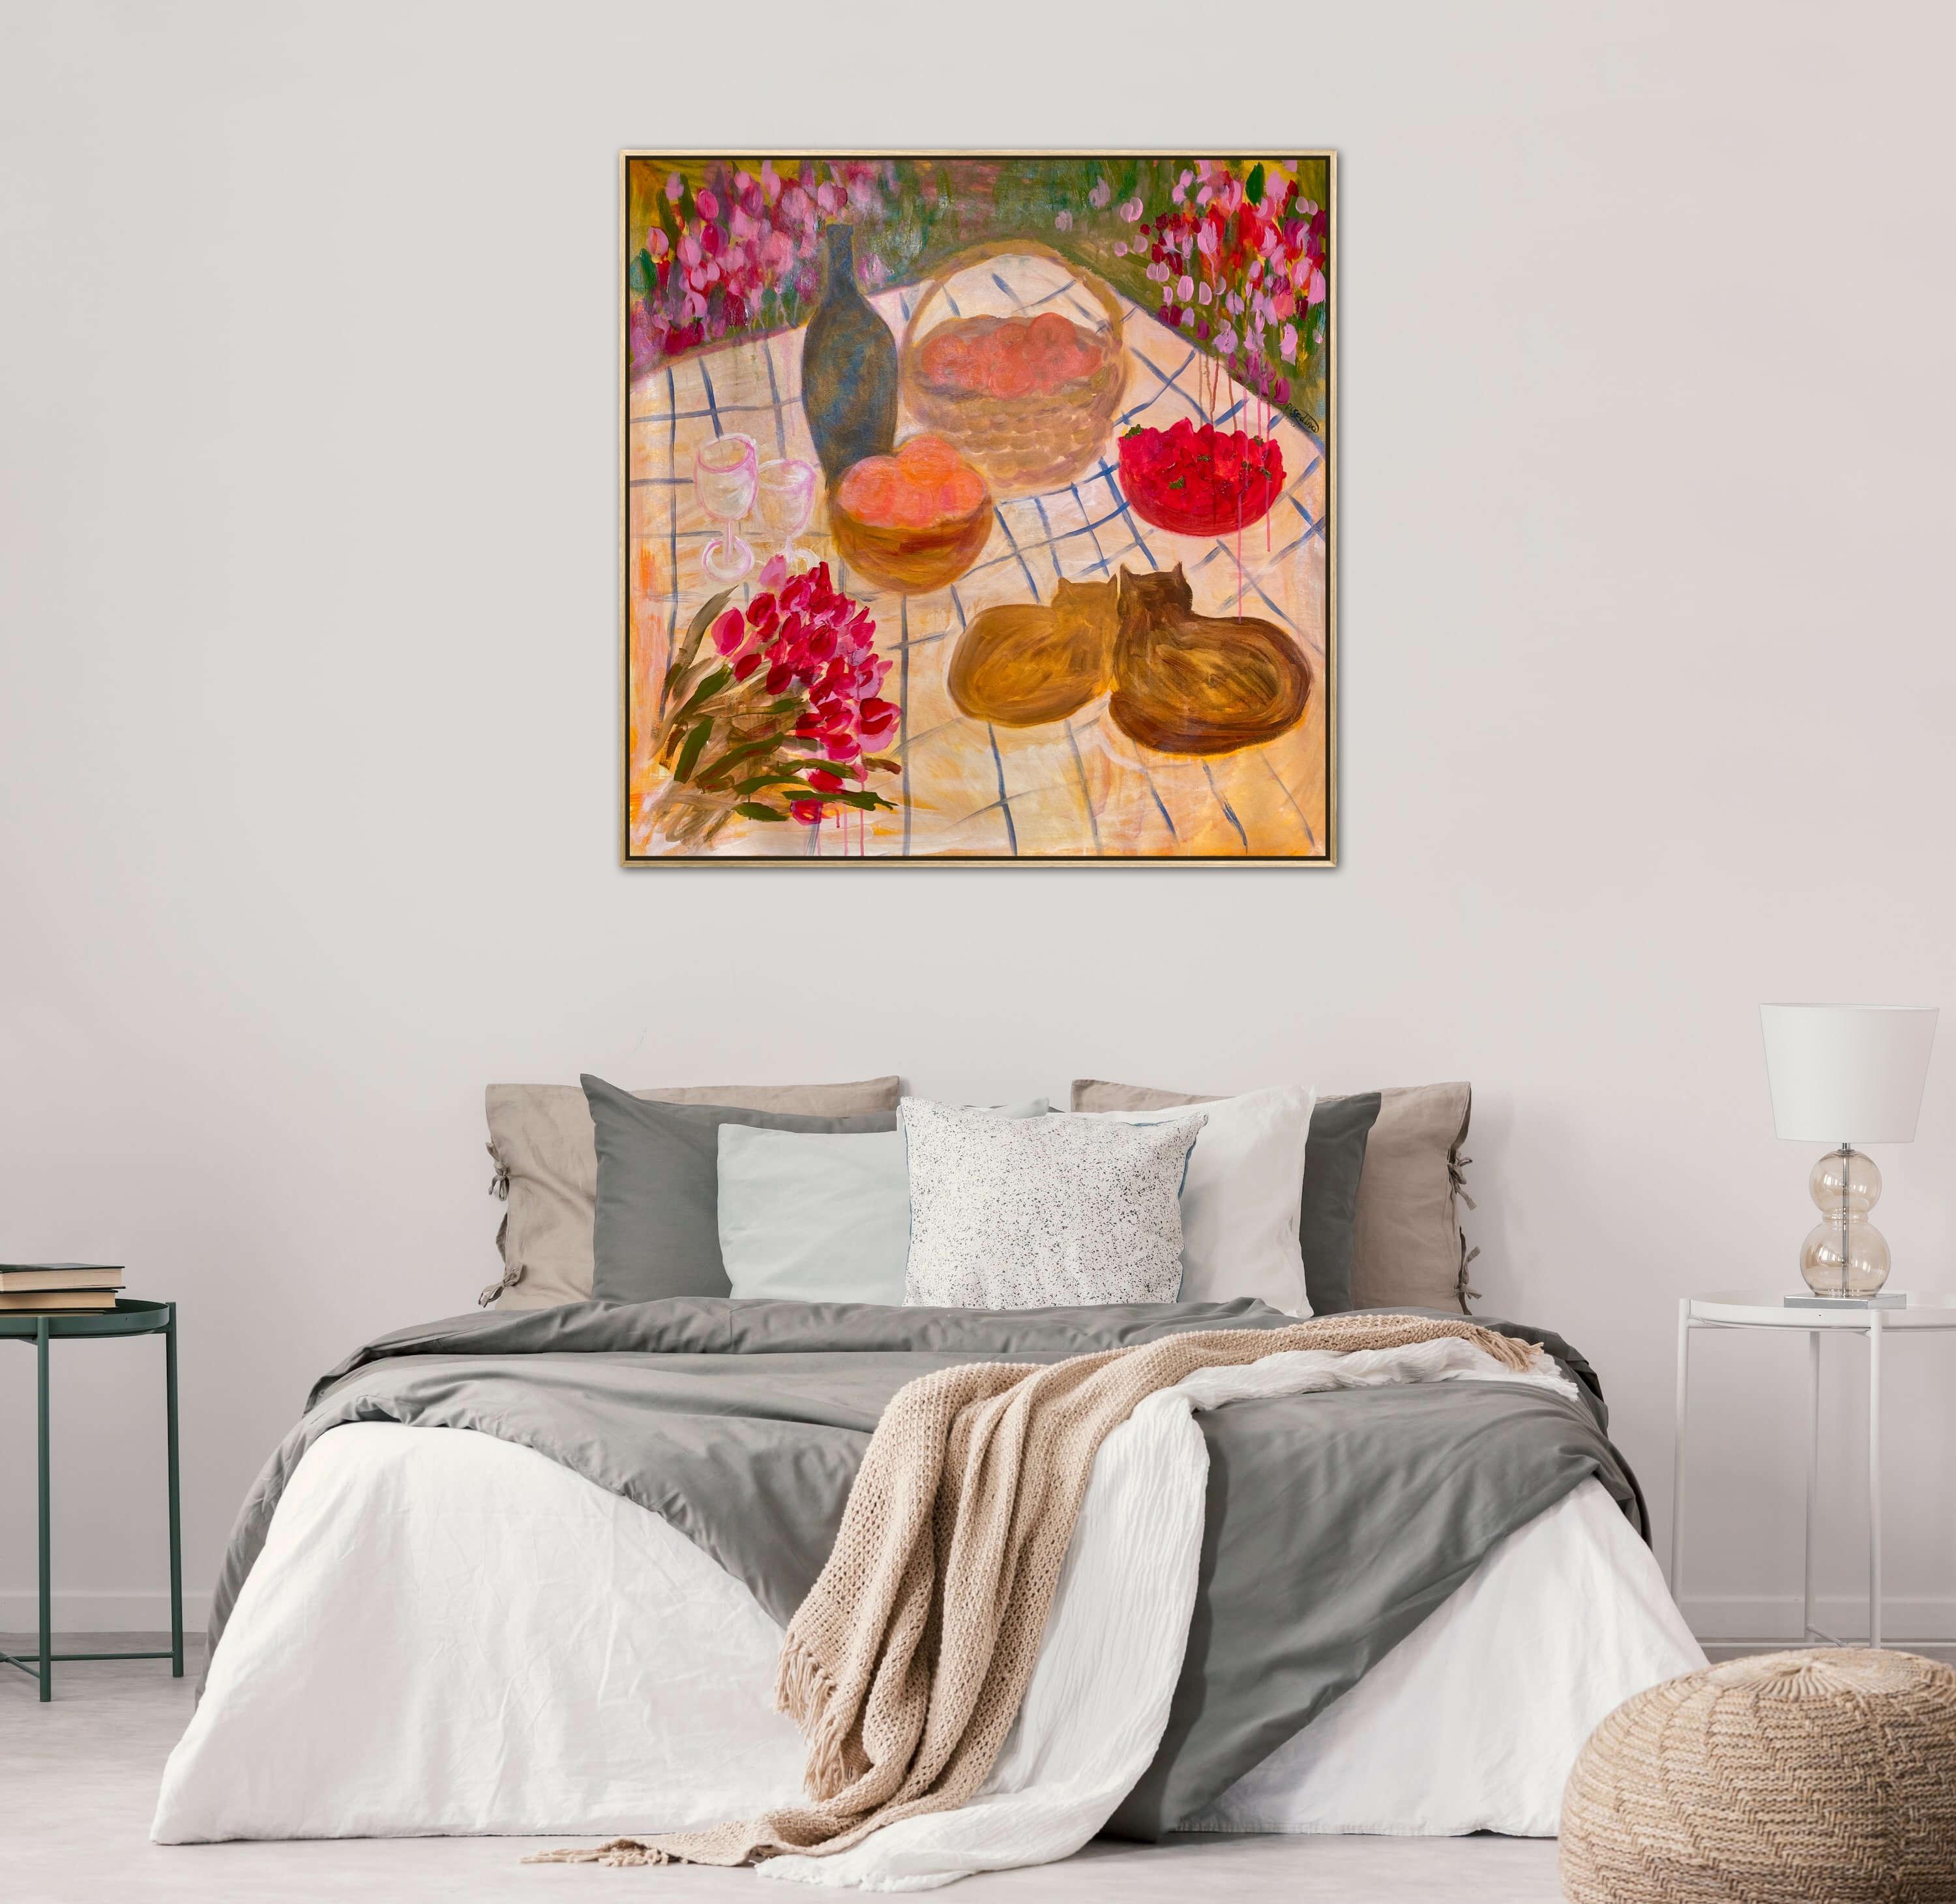 Let’s eat, honey - Painting by Dasha Pogodina